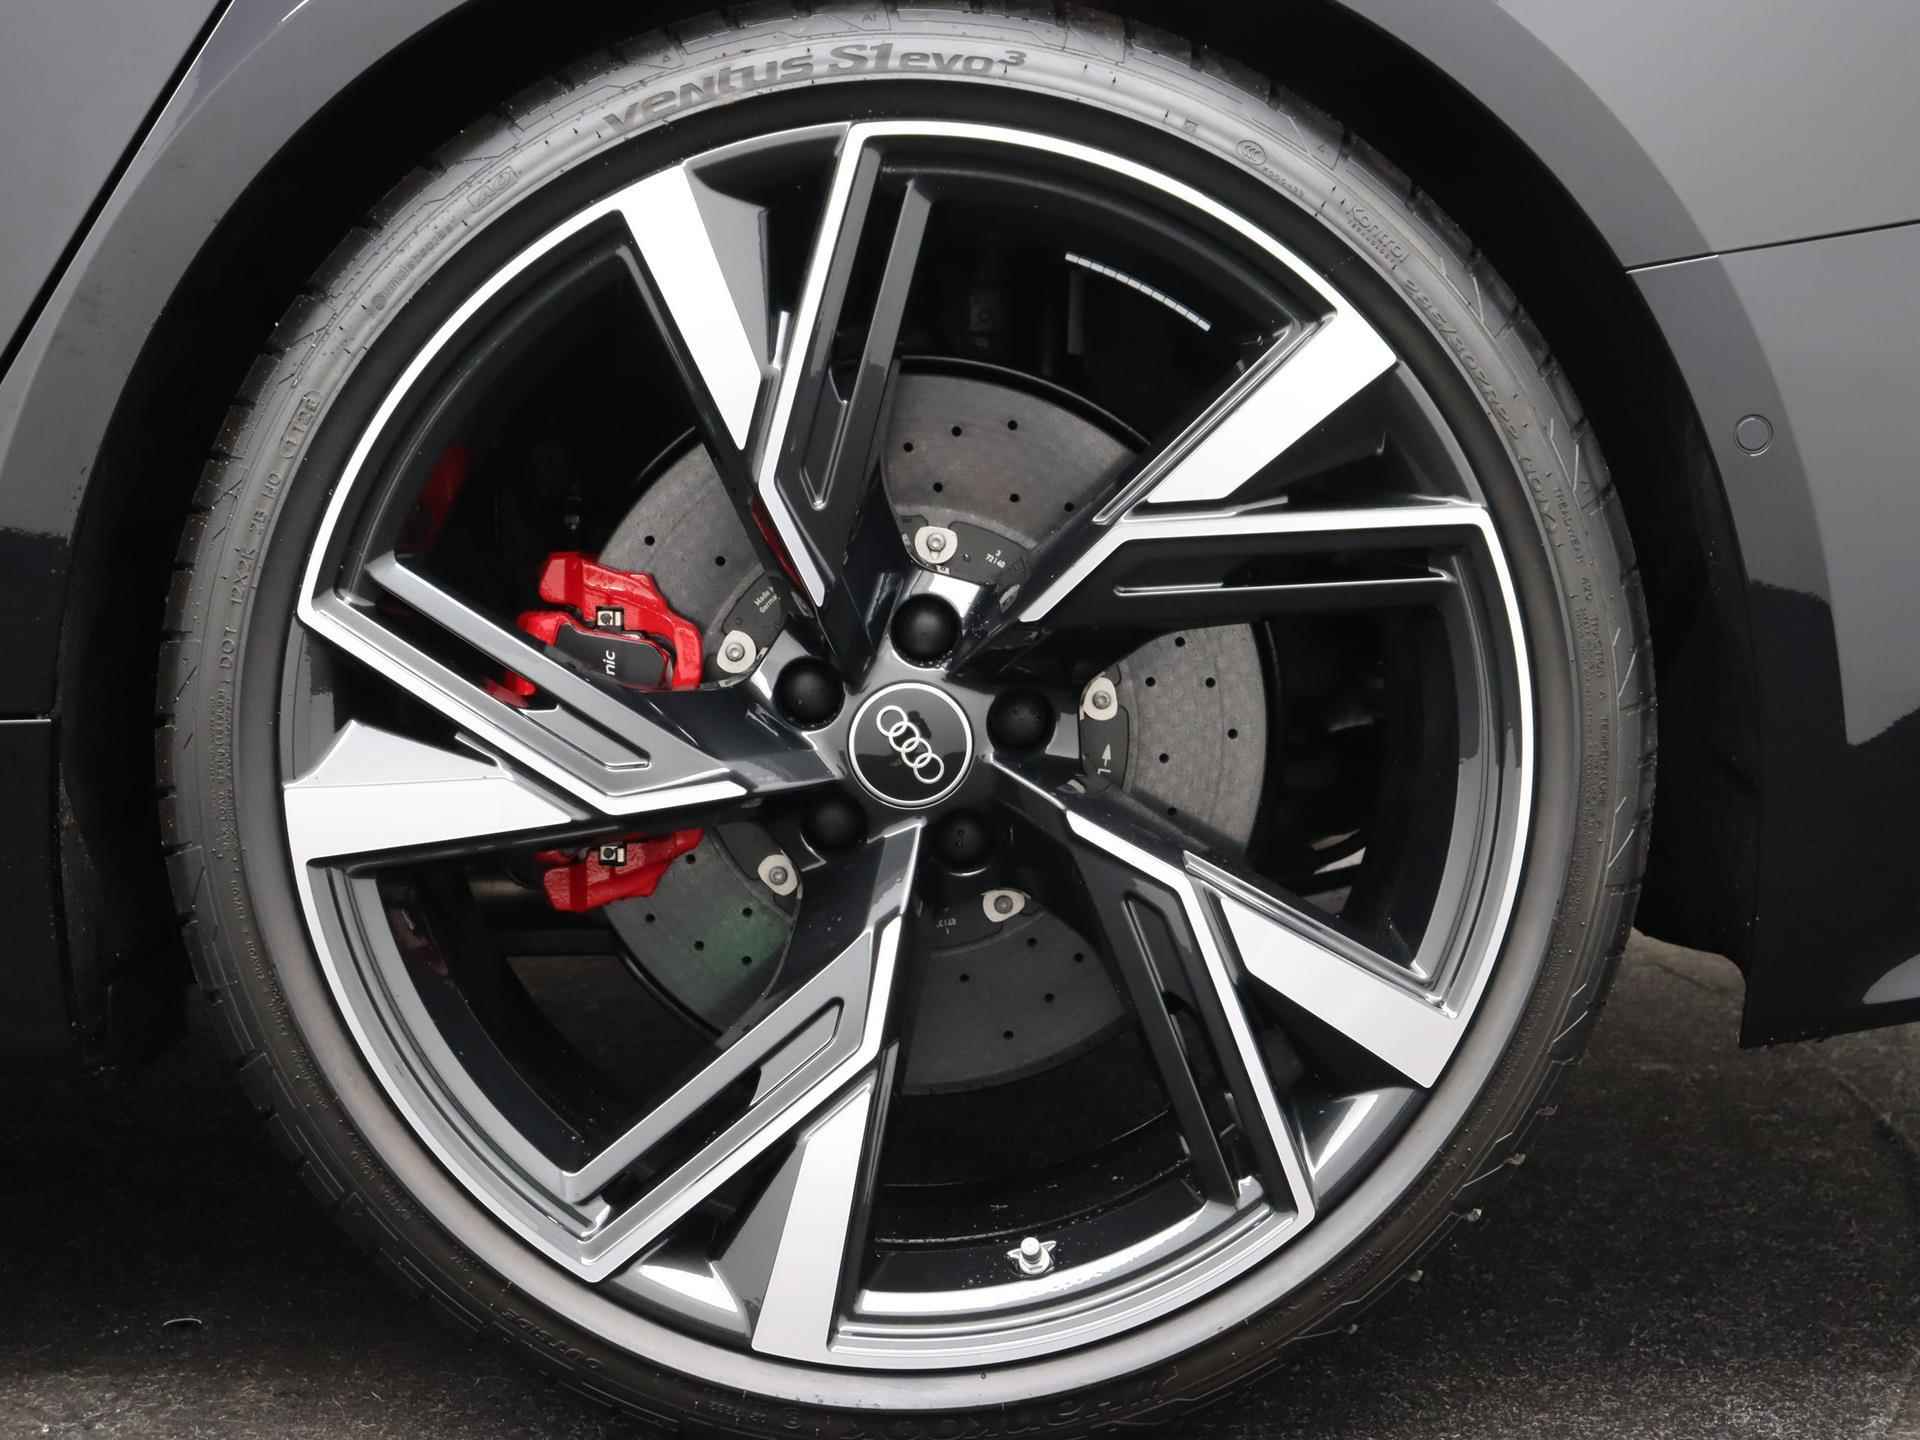 Audi RS 6 Avant TFSI quattro 600 PK | Head-up display | Bang & Olufsen Soundsystem | 22 inch lm velgen | RS Dynamic Pakket Plus | RS Design pakket Rood |Optiekpakket Zwart Plus | Panorama dak | RS Sportuitlaat | Keramische remschijven Rood | RS Sportonderstel Plus | Servosluiting deuren | Nu € 36.129,- ACTIEKORTING! | DIRECT LEVERBAAR! | - 11/35